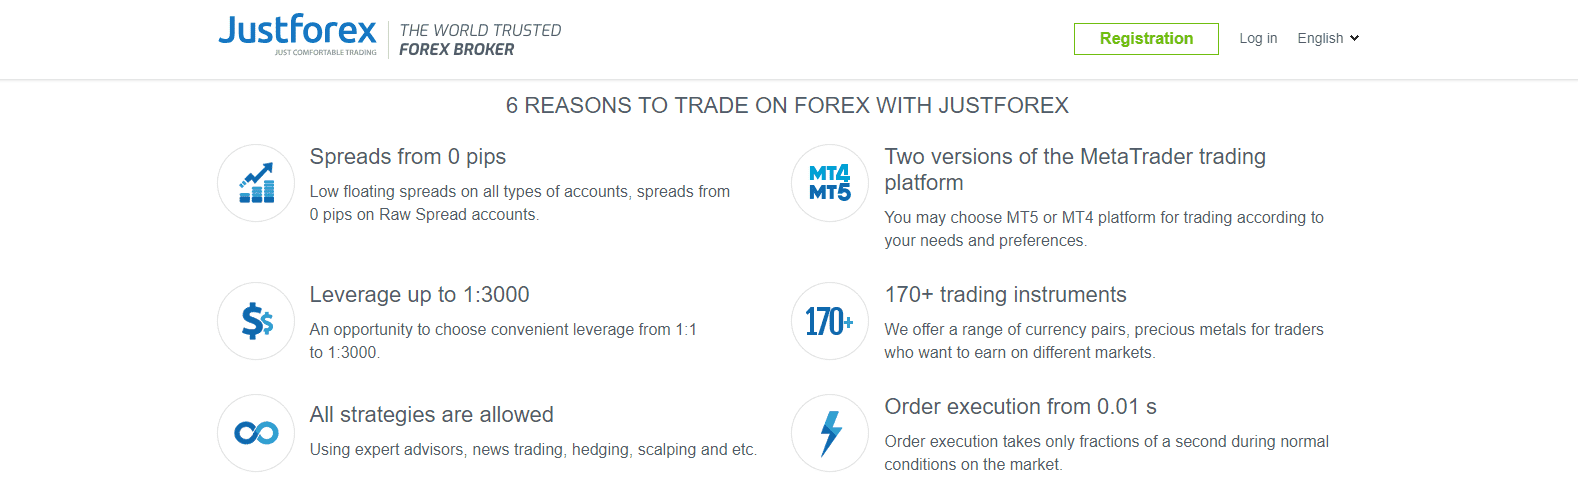 Justforex JustForex Forex